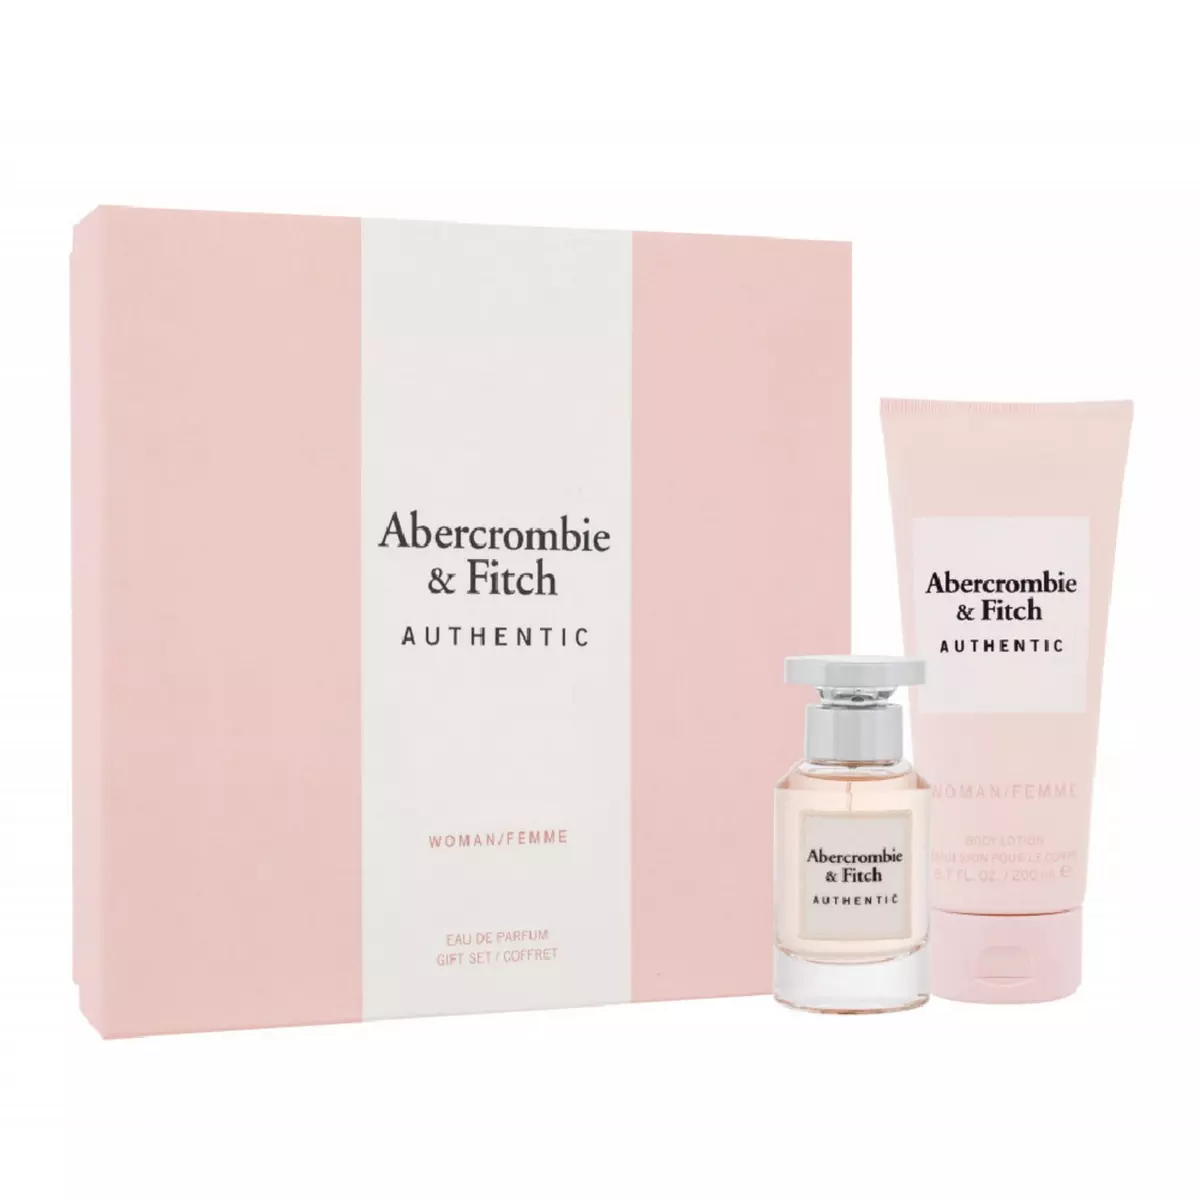 ABERCROMBIE & FITCH Coffret Eau de parfum Femme Abercrombie & Fitch Authentic